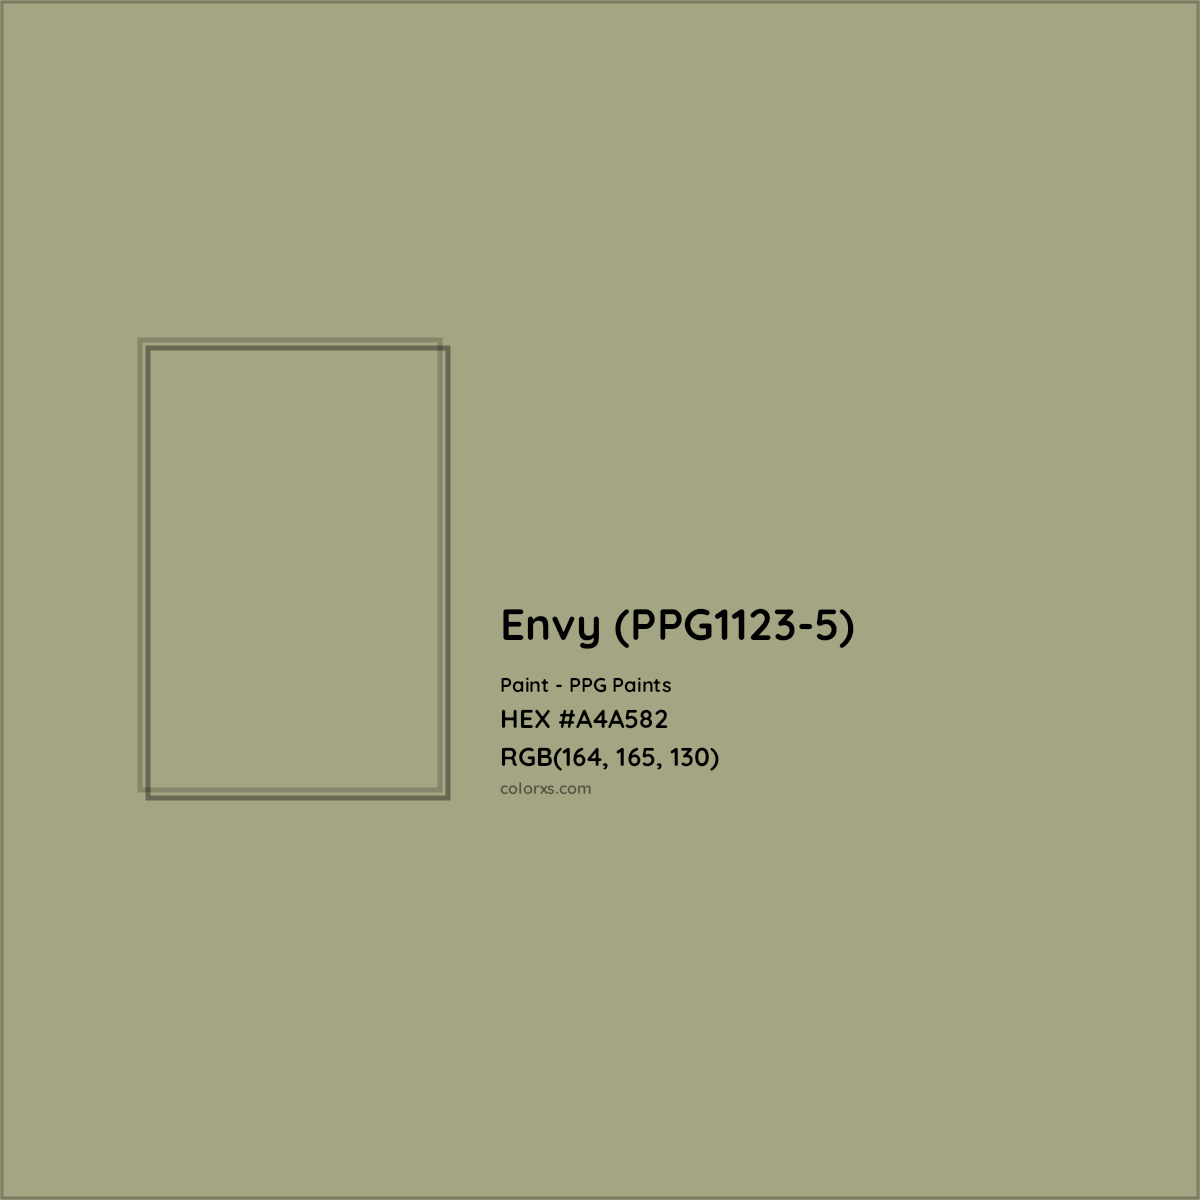 HEX #A4A582 Envy (PPG1123-5) Paint PPG Paints - Color Code